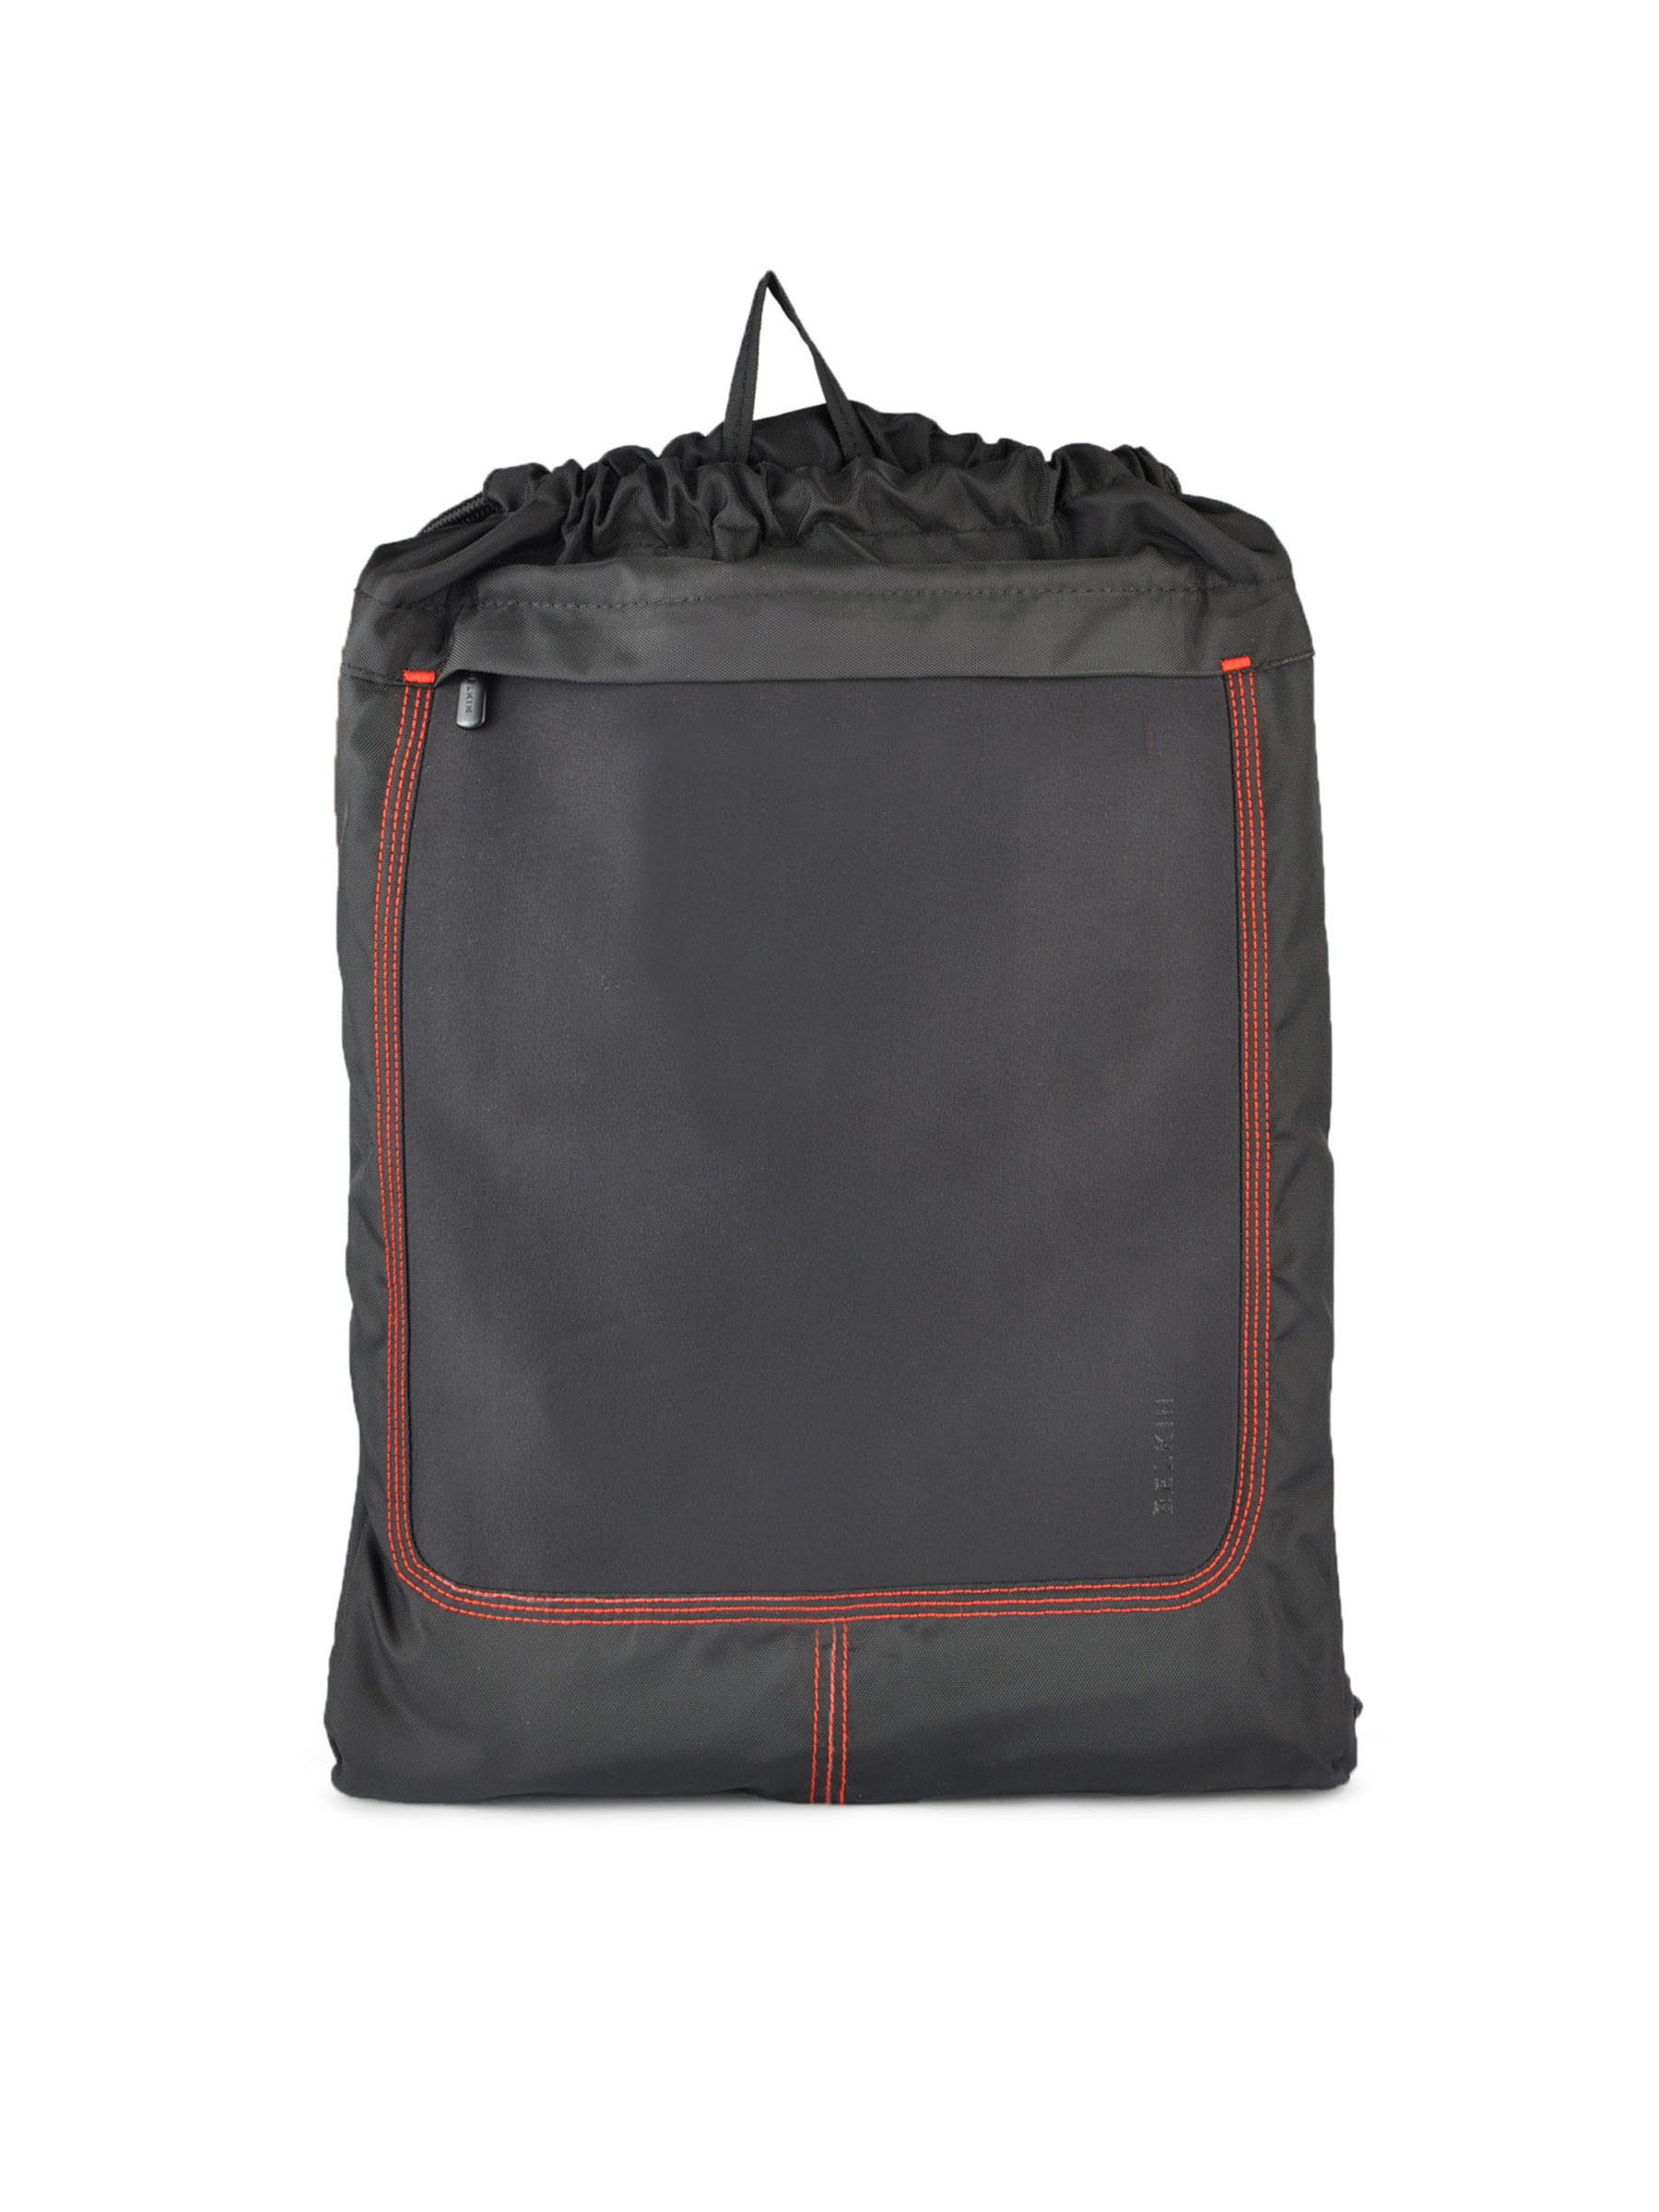 Belkin Unisex Netbook Roadie Black Backpacks